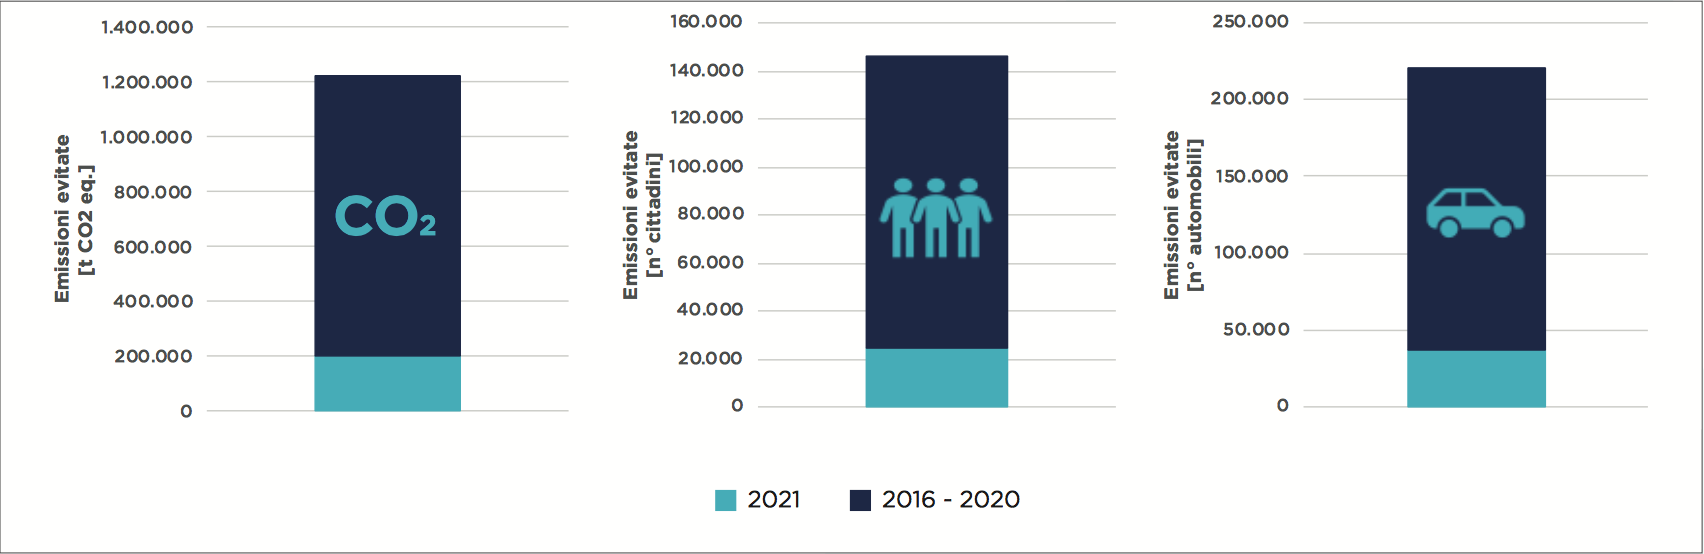 Emissioni evitate grazie alle modifiche implementate sulle macchine, numero di automobili e numero di cittadini (valutazione sul 2021 e stima sugli anni precedenti) 